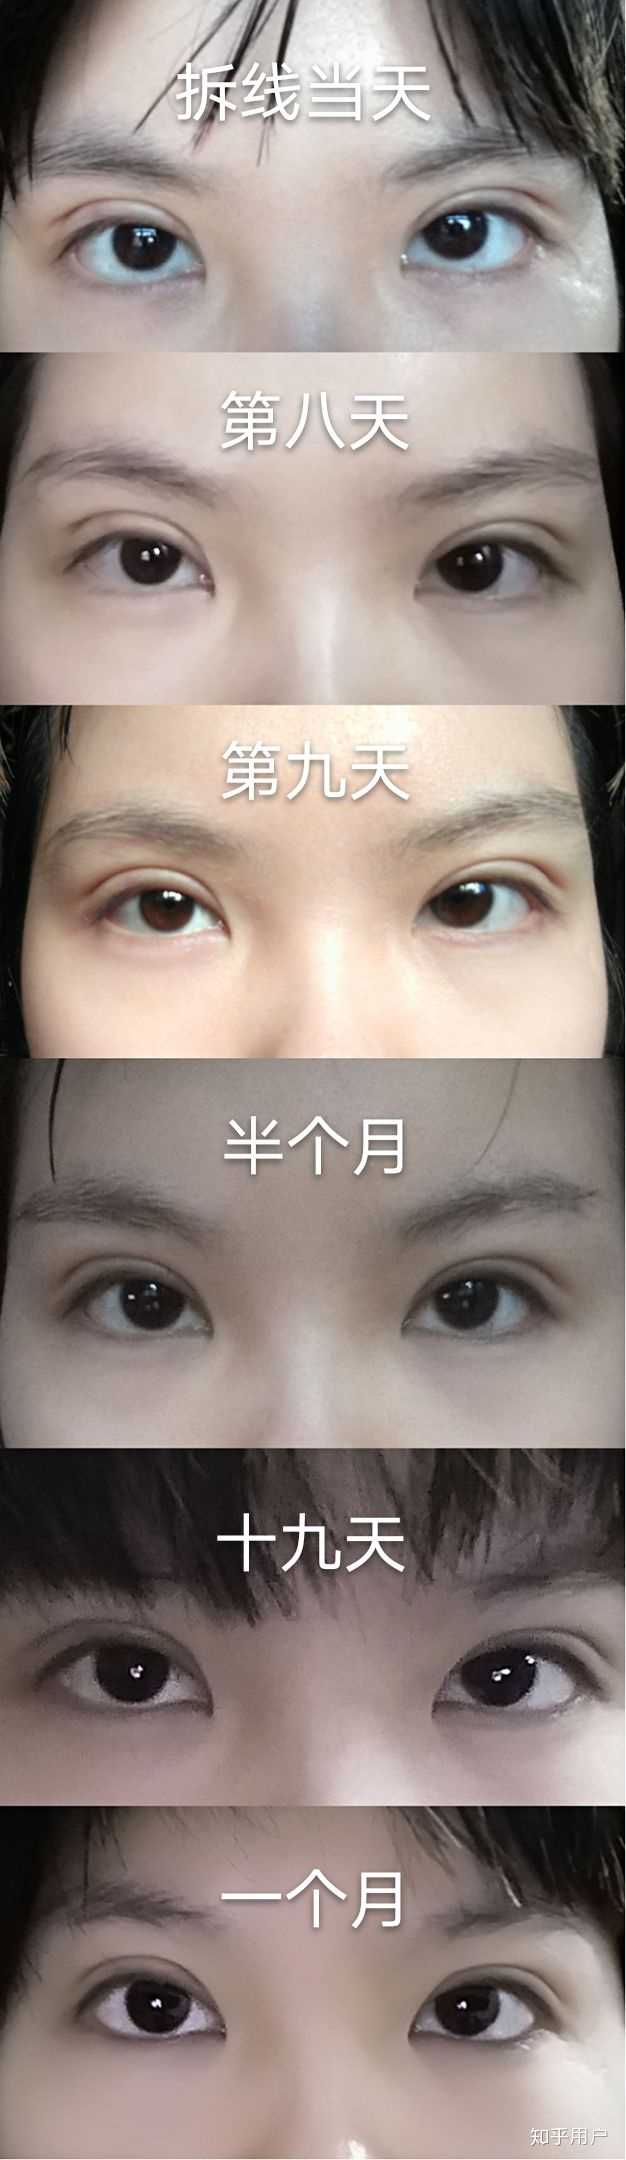 你见过的双眼皮手术最成功,效果最好的案例有哪些?